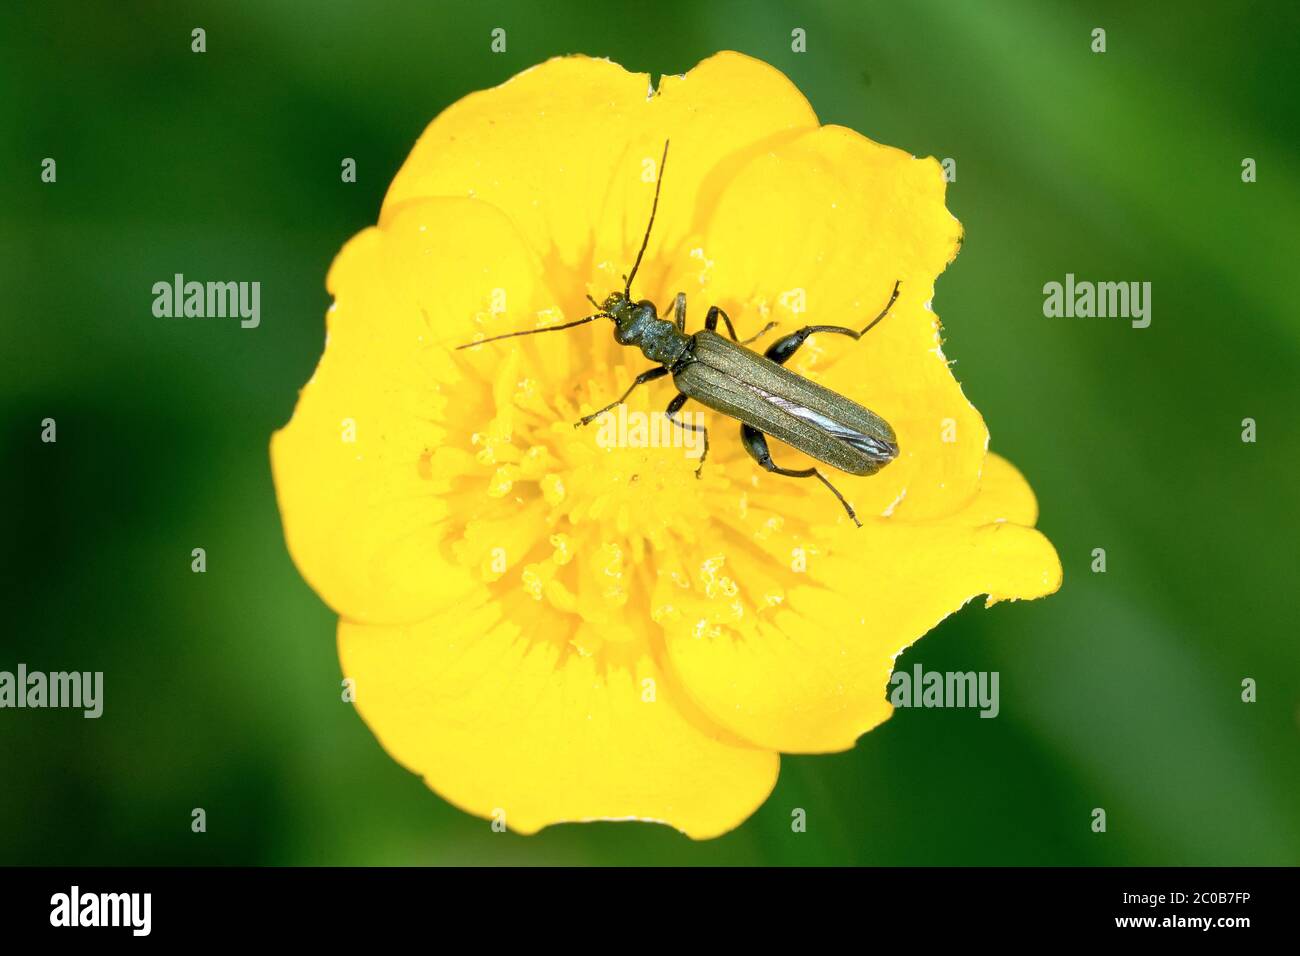 Beetle on yellow flower Stock Photo